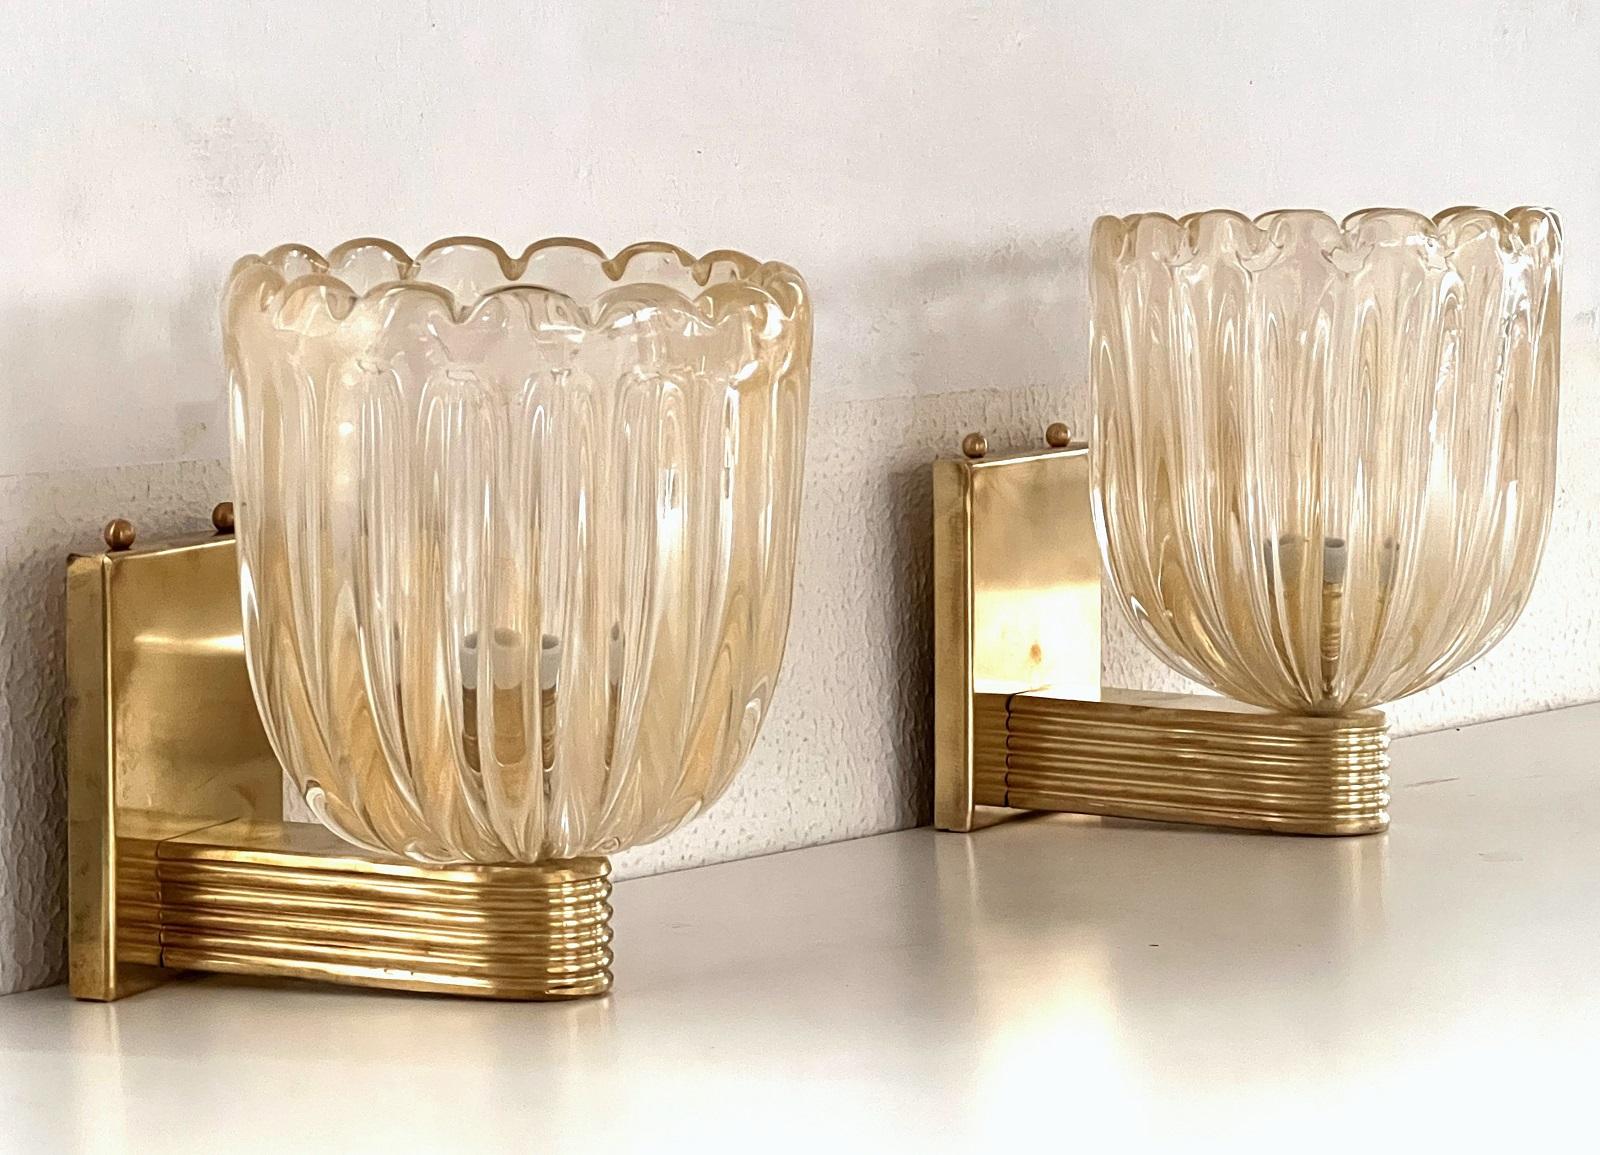 Magnifique ensemble de deux superbes appliques en laiton composé d'une base en laiton solide et de verres de Murano épais et transparents avec des paillettes dorées à l'intérieur du verre. Style Art déco.
Les magnifiques verres fabriqués à la main